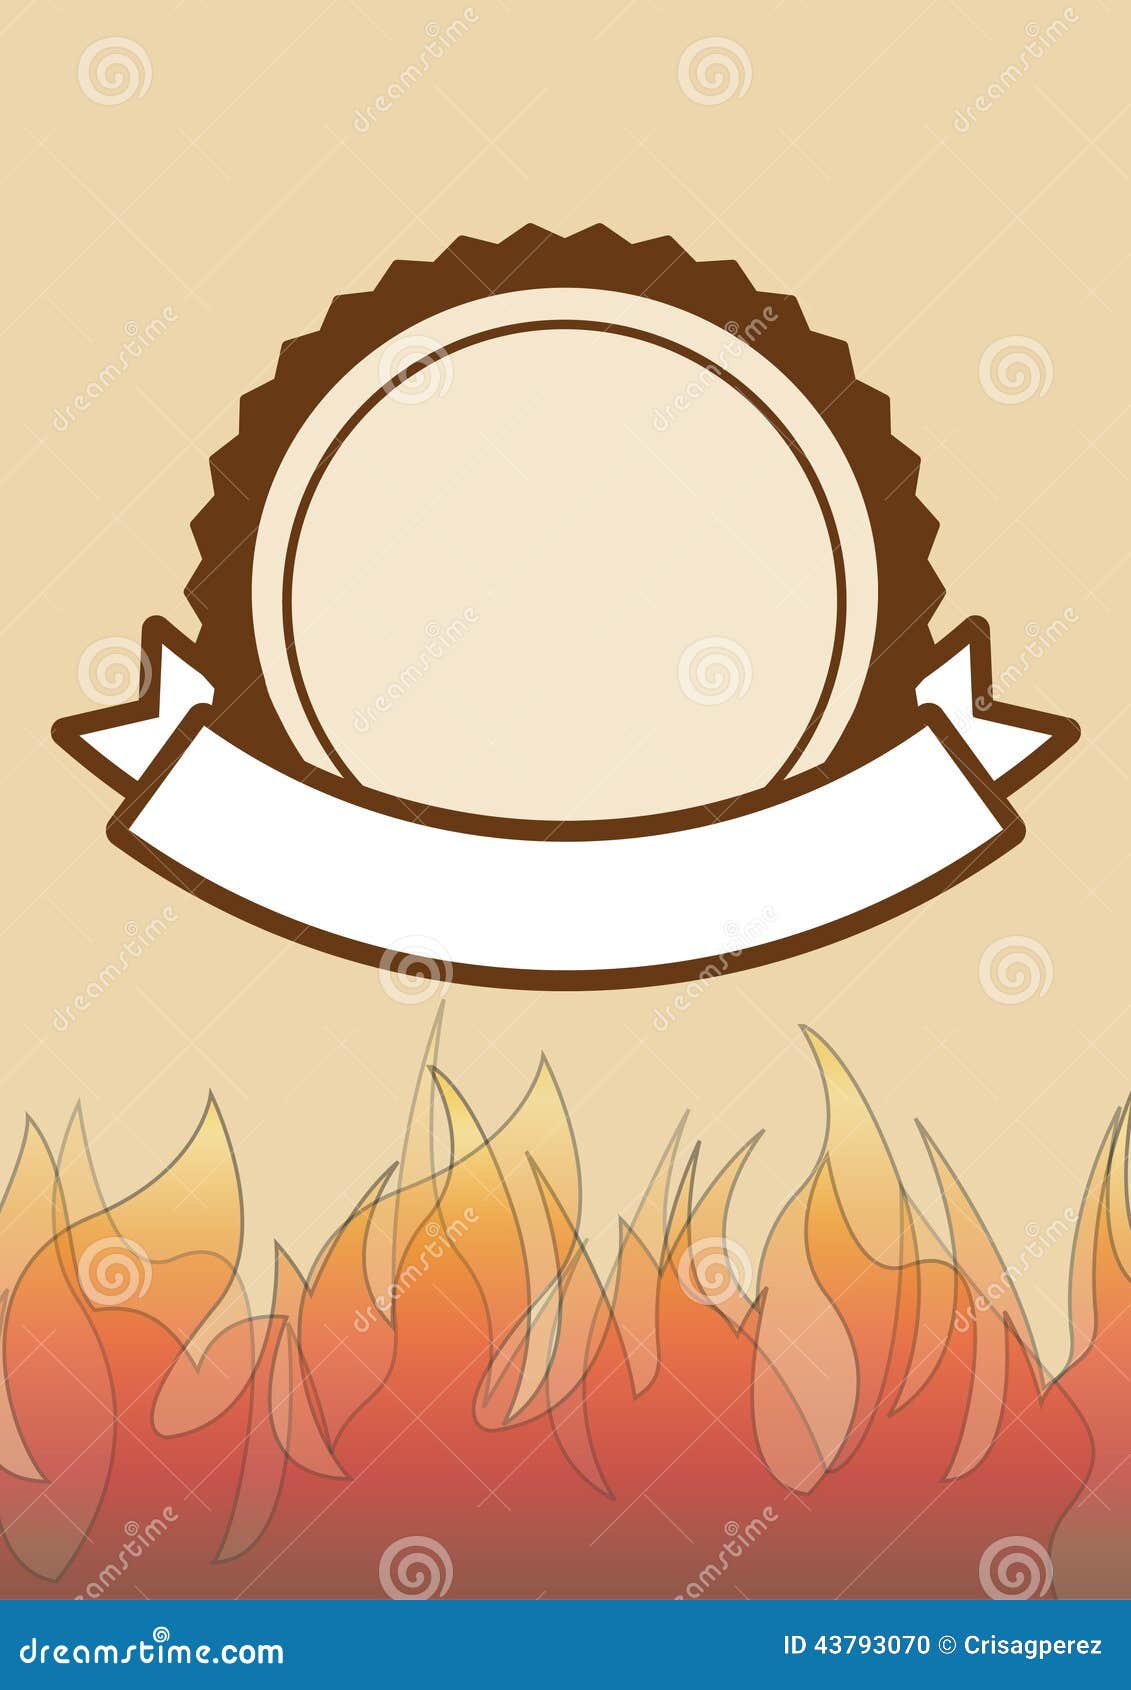 Ongekend De Uitnodiging Van De Barbecuepartij Met Ruimte Voor Tekst, BBQ BQ-46